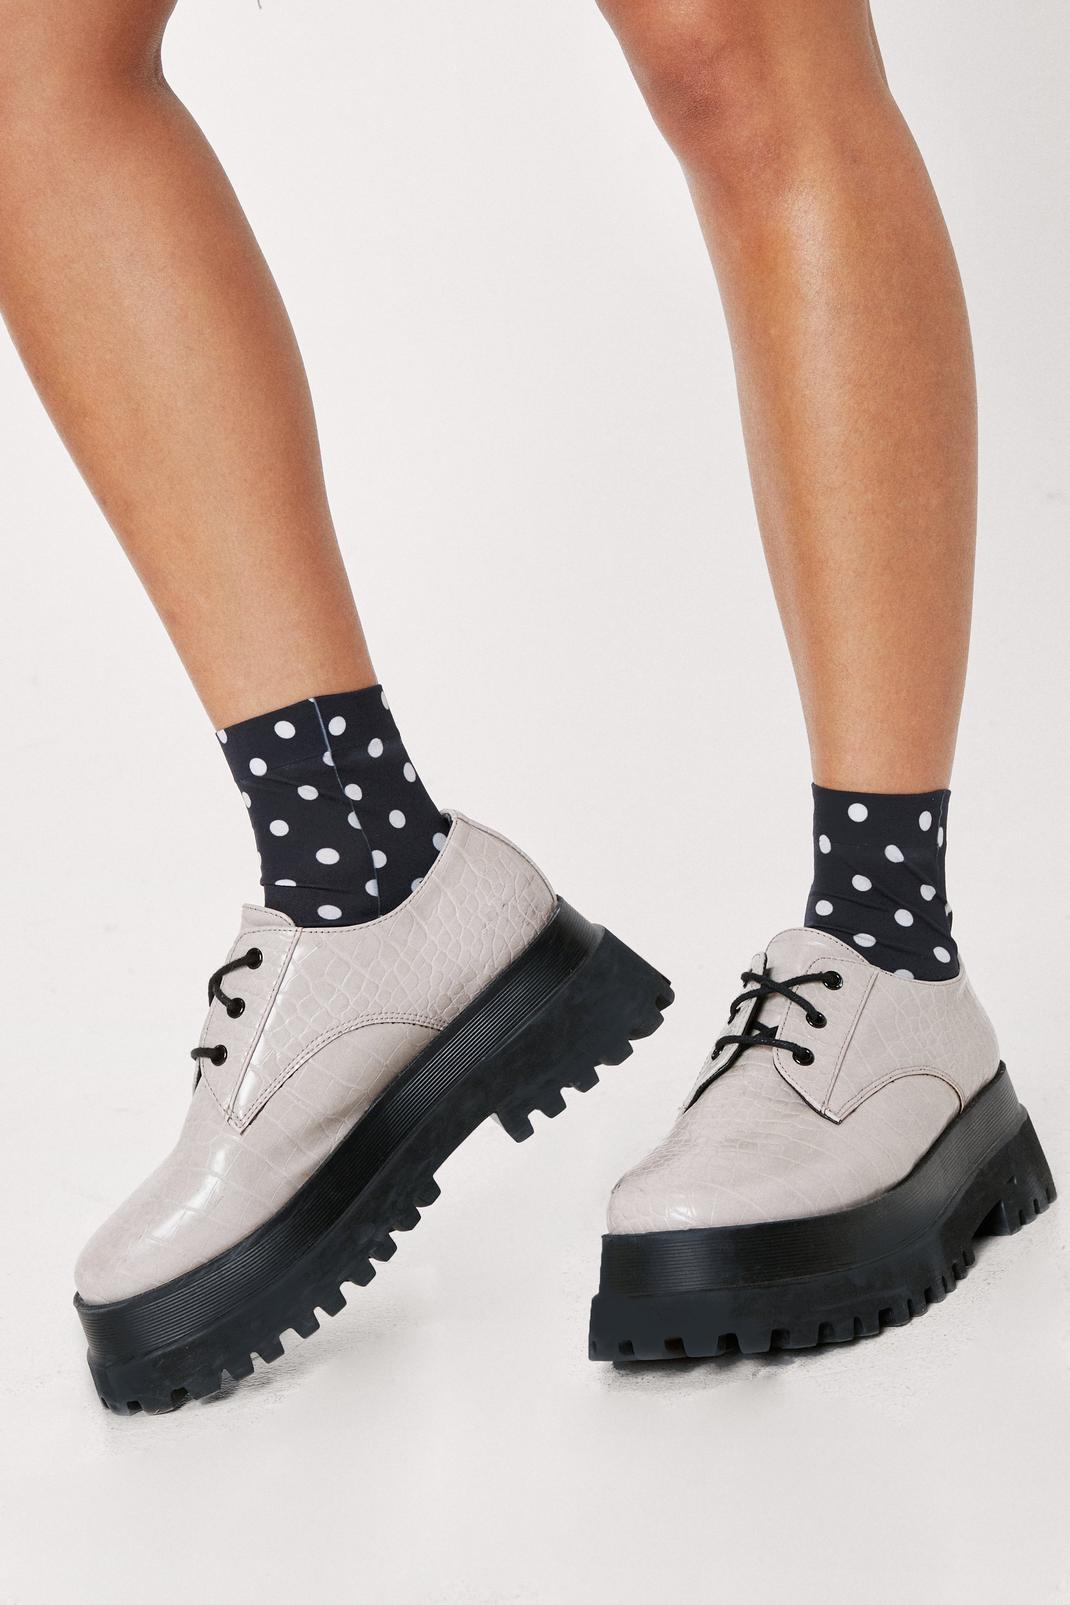 Black Polka Dot Ankle Socks image number 1